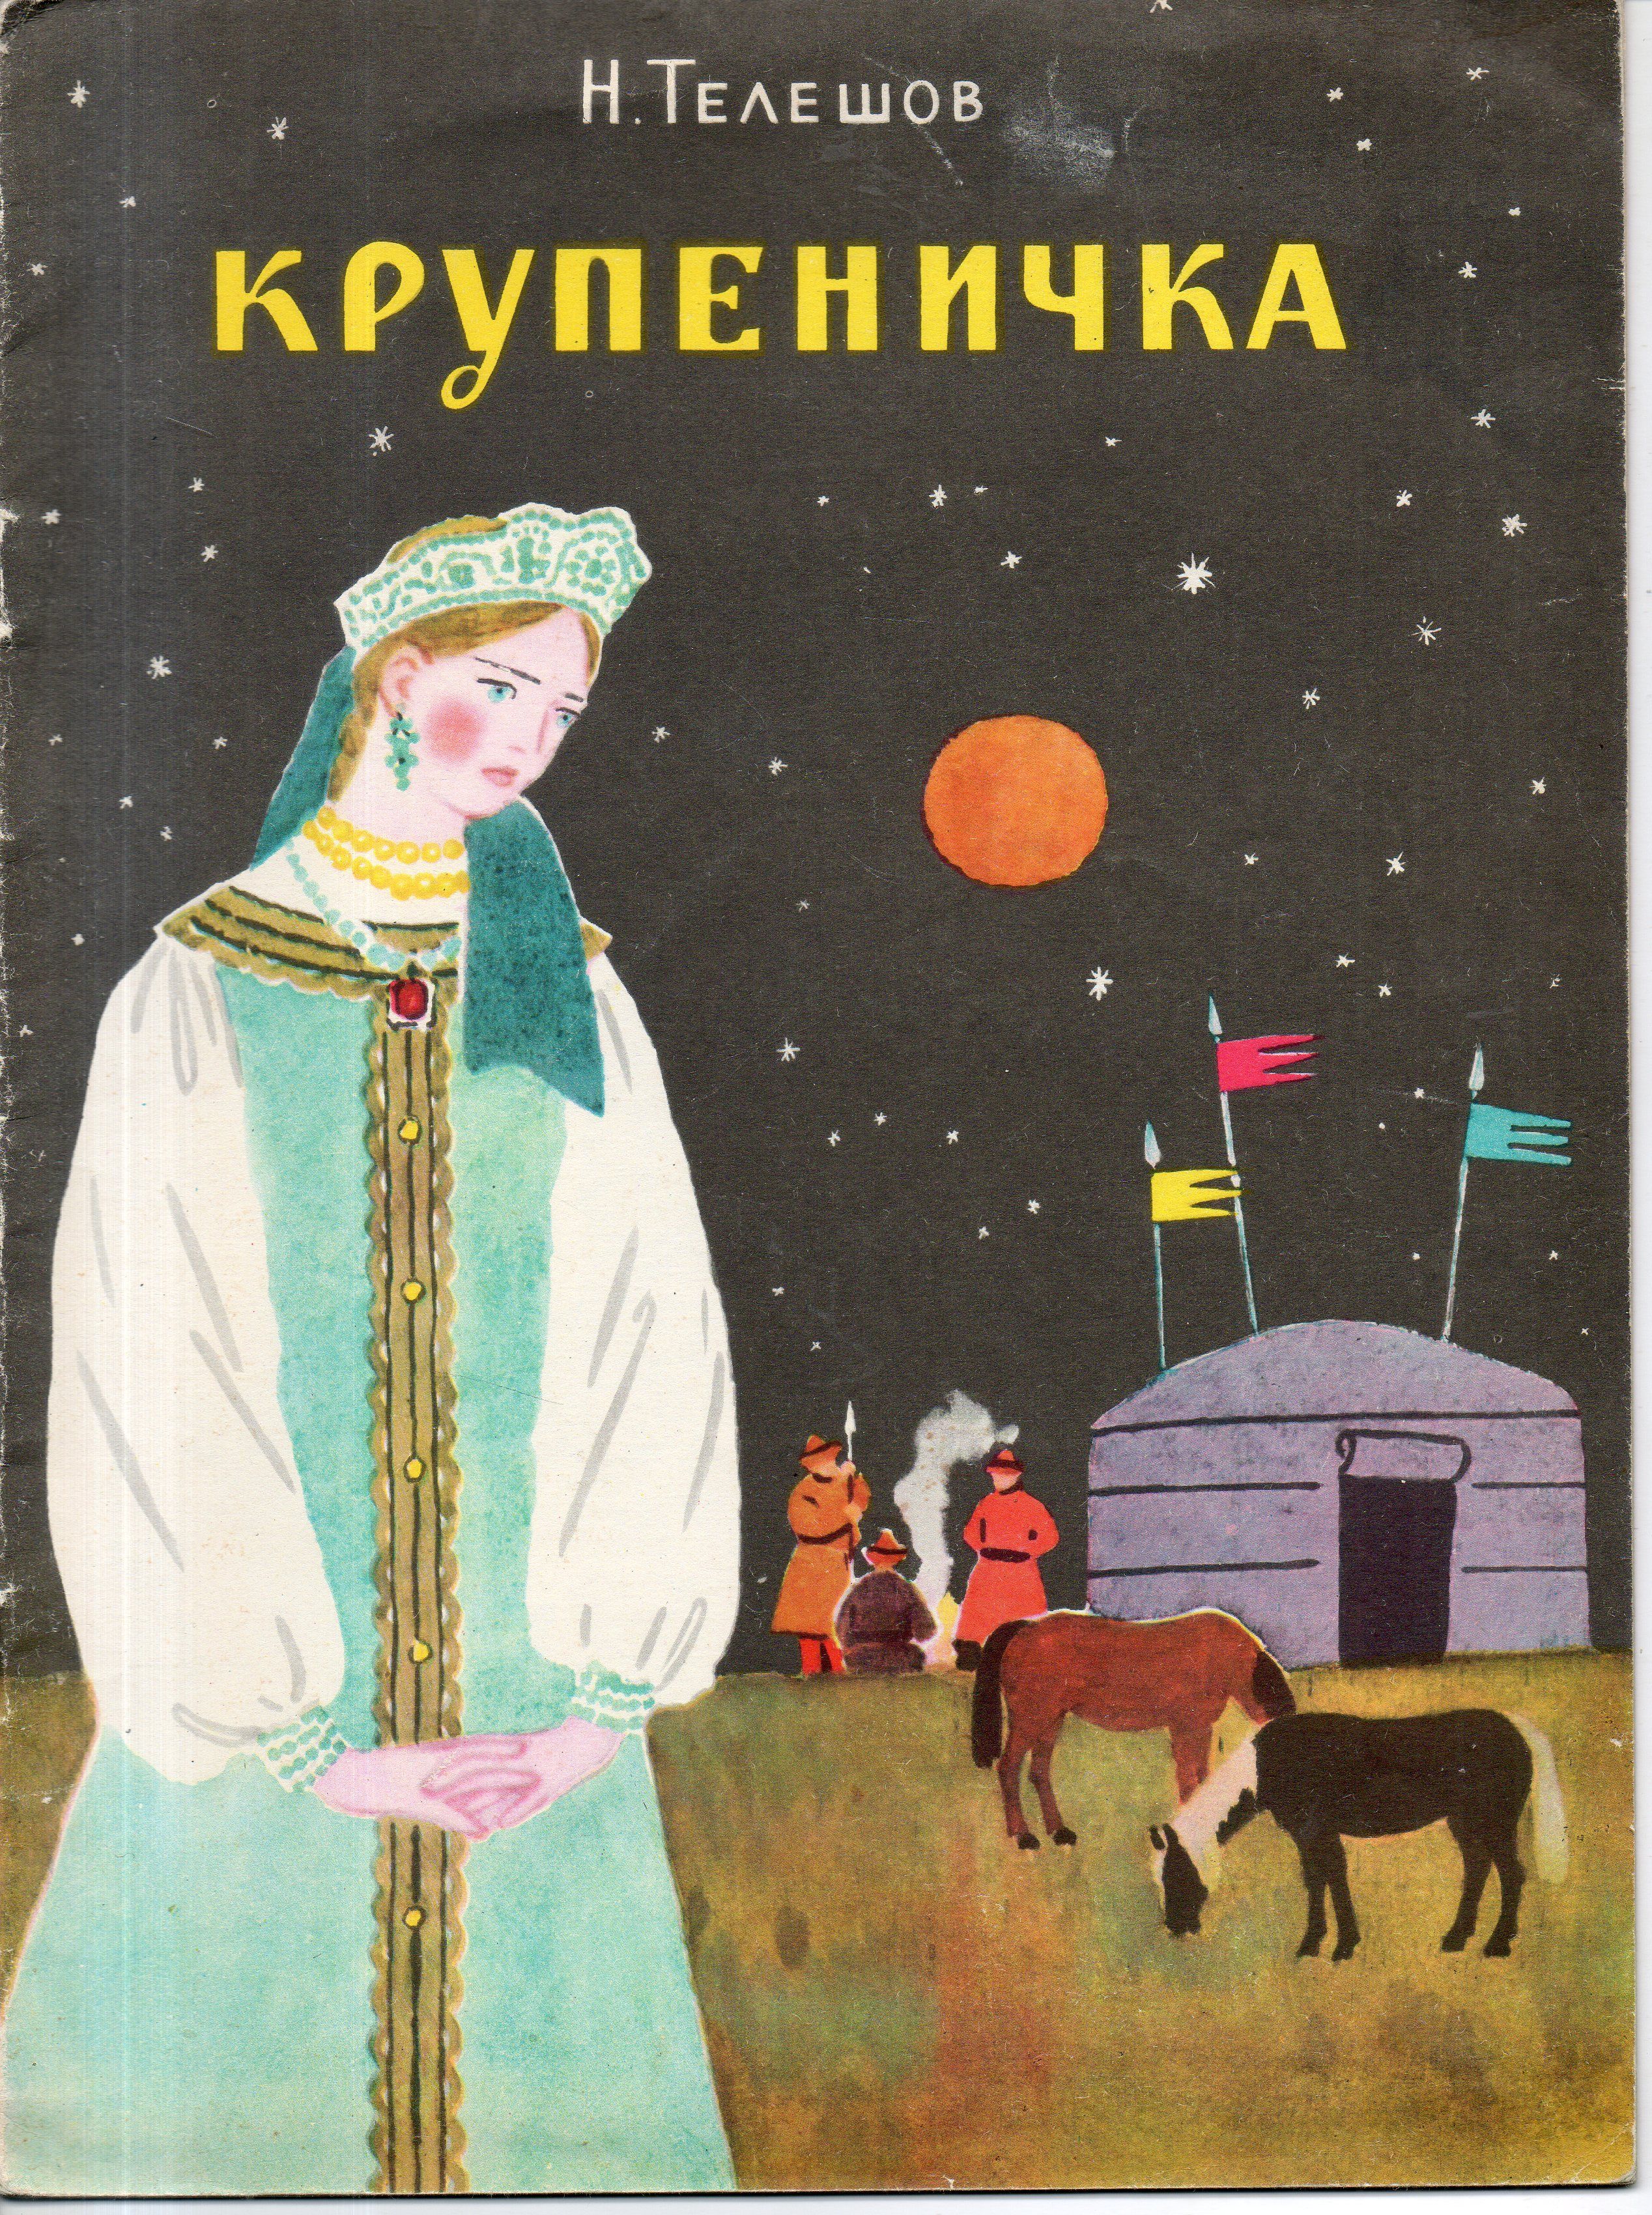 Читать сказку крупеничка - телешов н. - отечественные писатели, онлайн бесплатно с иллюстрациями.